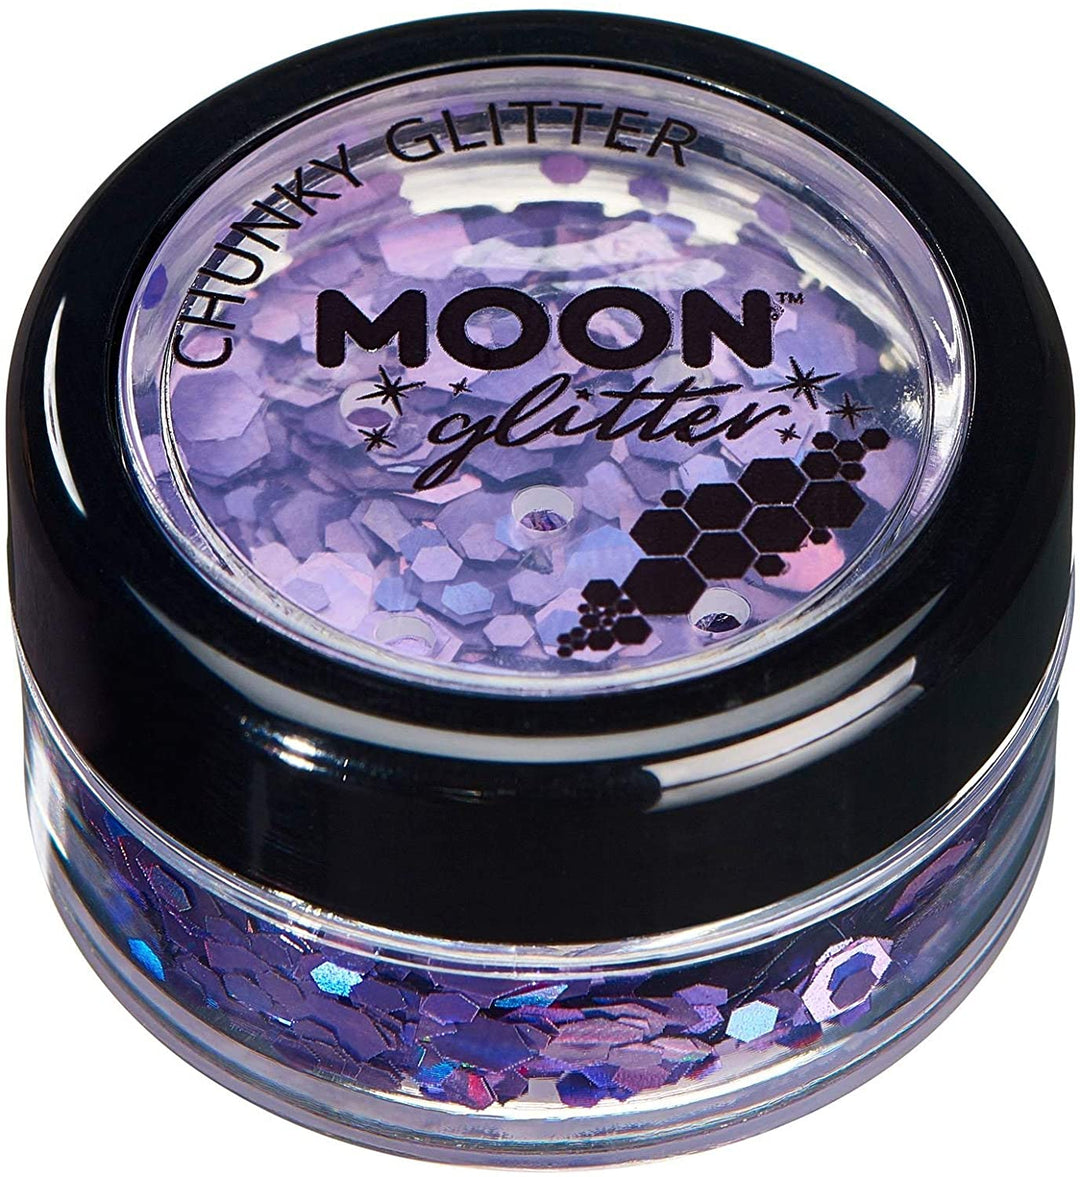 Grober holografischer Glitzer von Moon Glitter – Lila – kosmetischer Festival-Make-up-Glitzer für Gesicht, Körper, Nägel, Haare, Lippen – 3 g